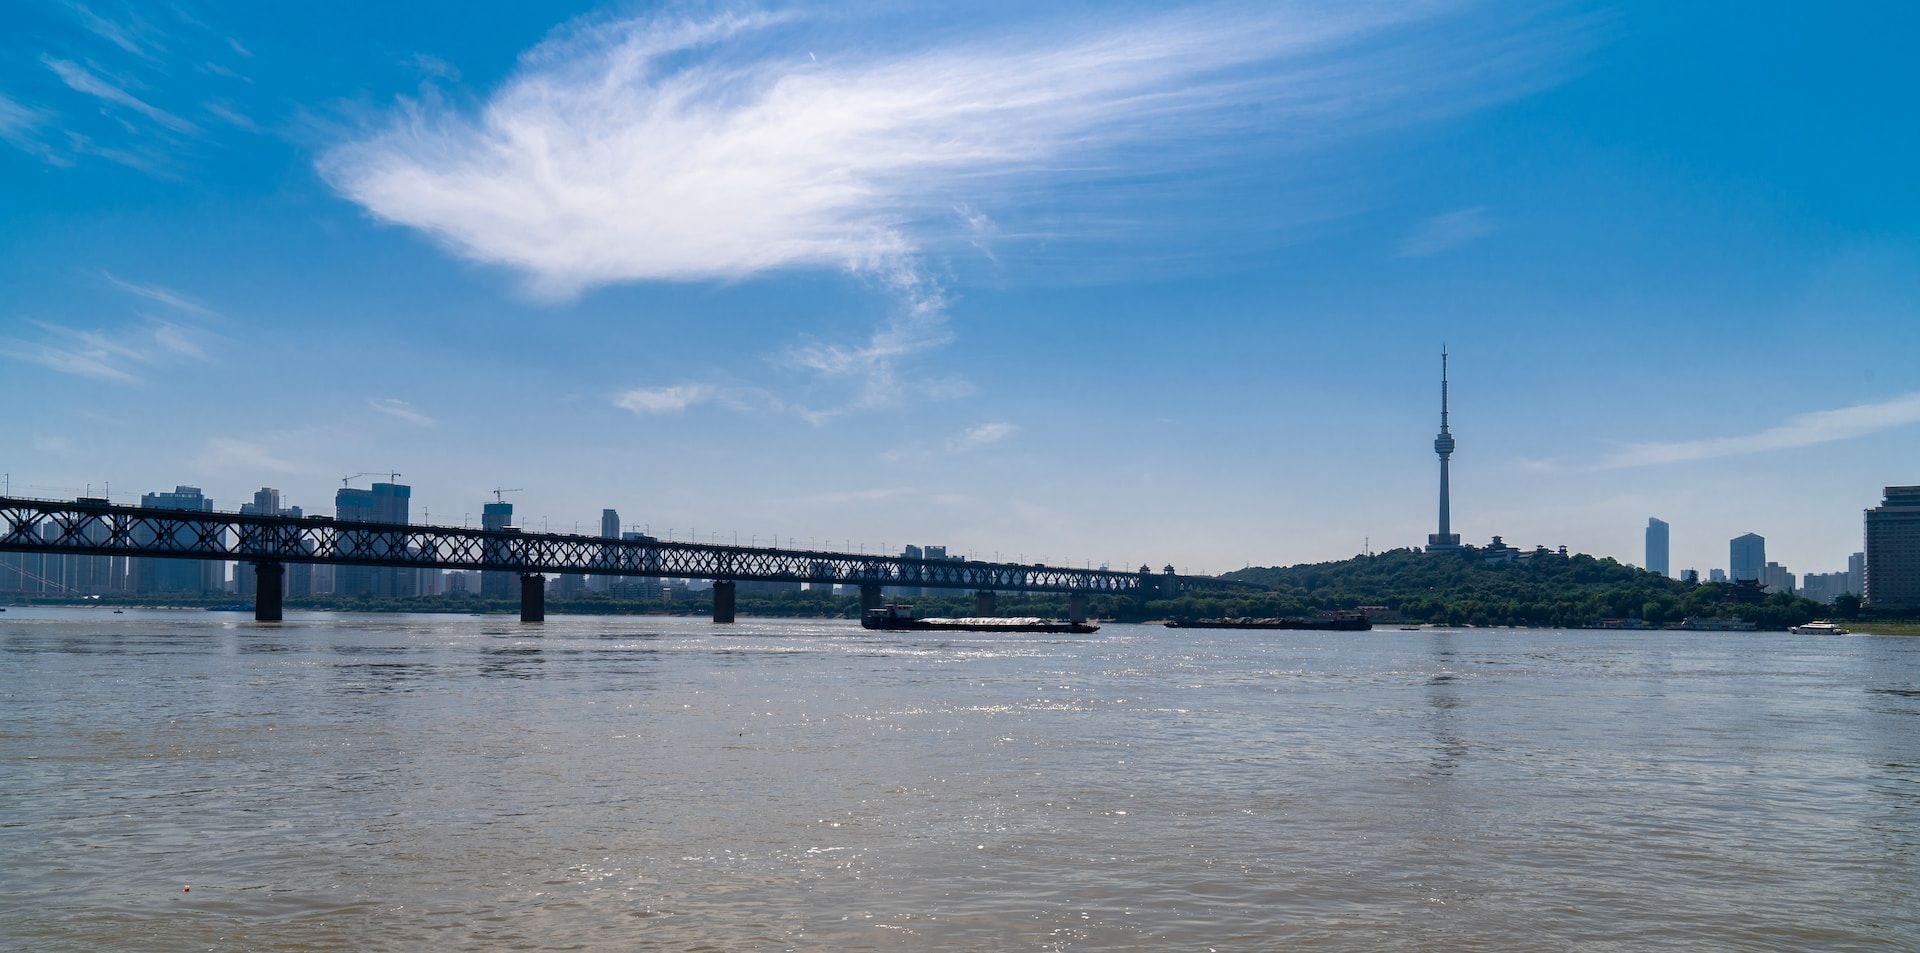 Wuhan ponte do rio Yangtze